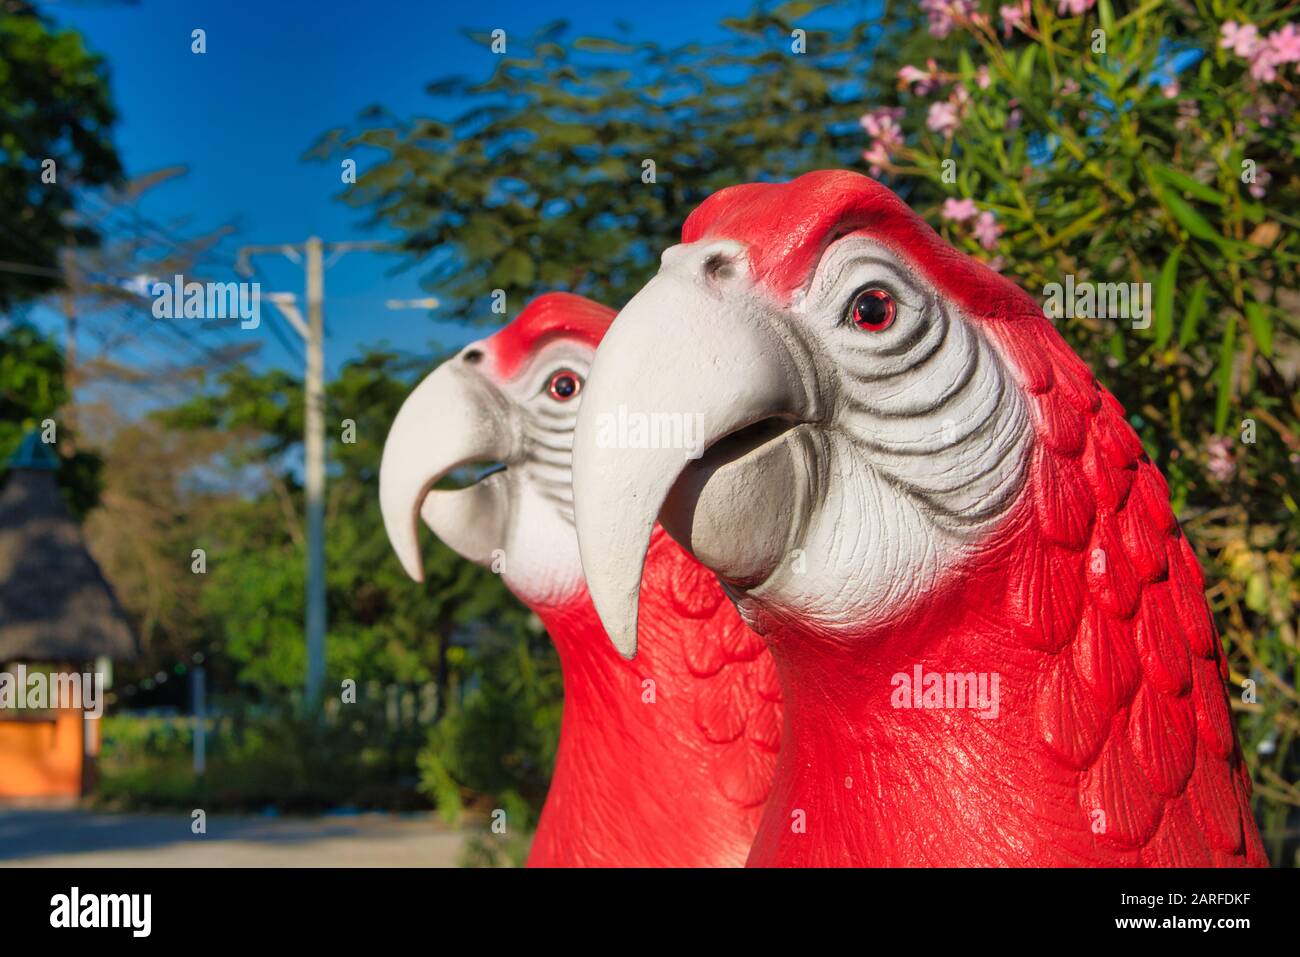 Dieses einzigartige Foto zeigt zwei dekorative Papageienköpfe in rot und weiß, die in einem Garten stehen. Man kann die Details sehr gut sehen. Stockfoto